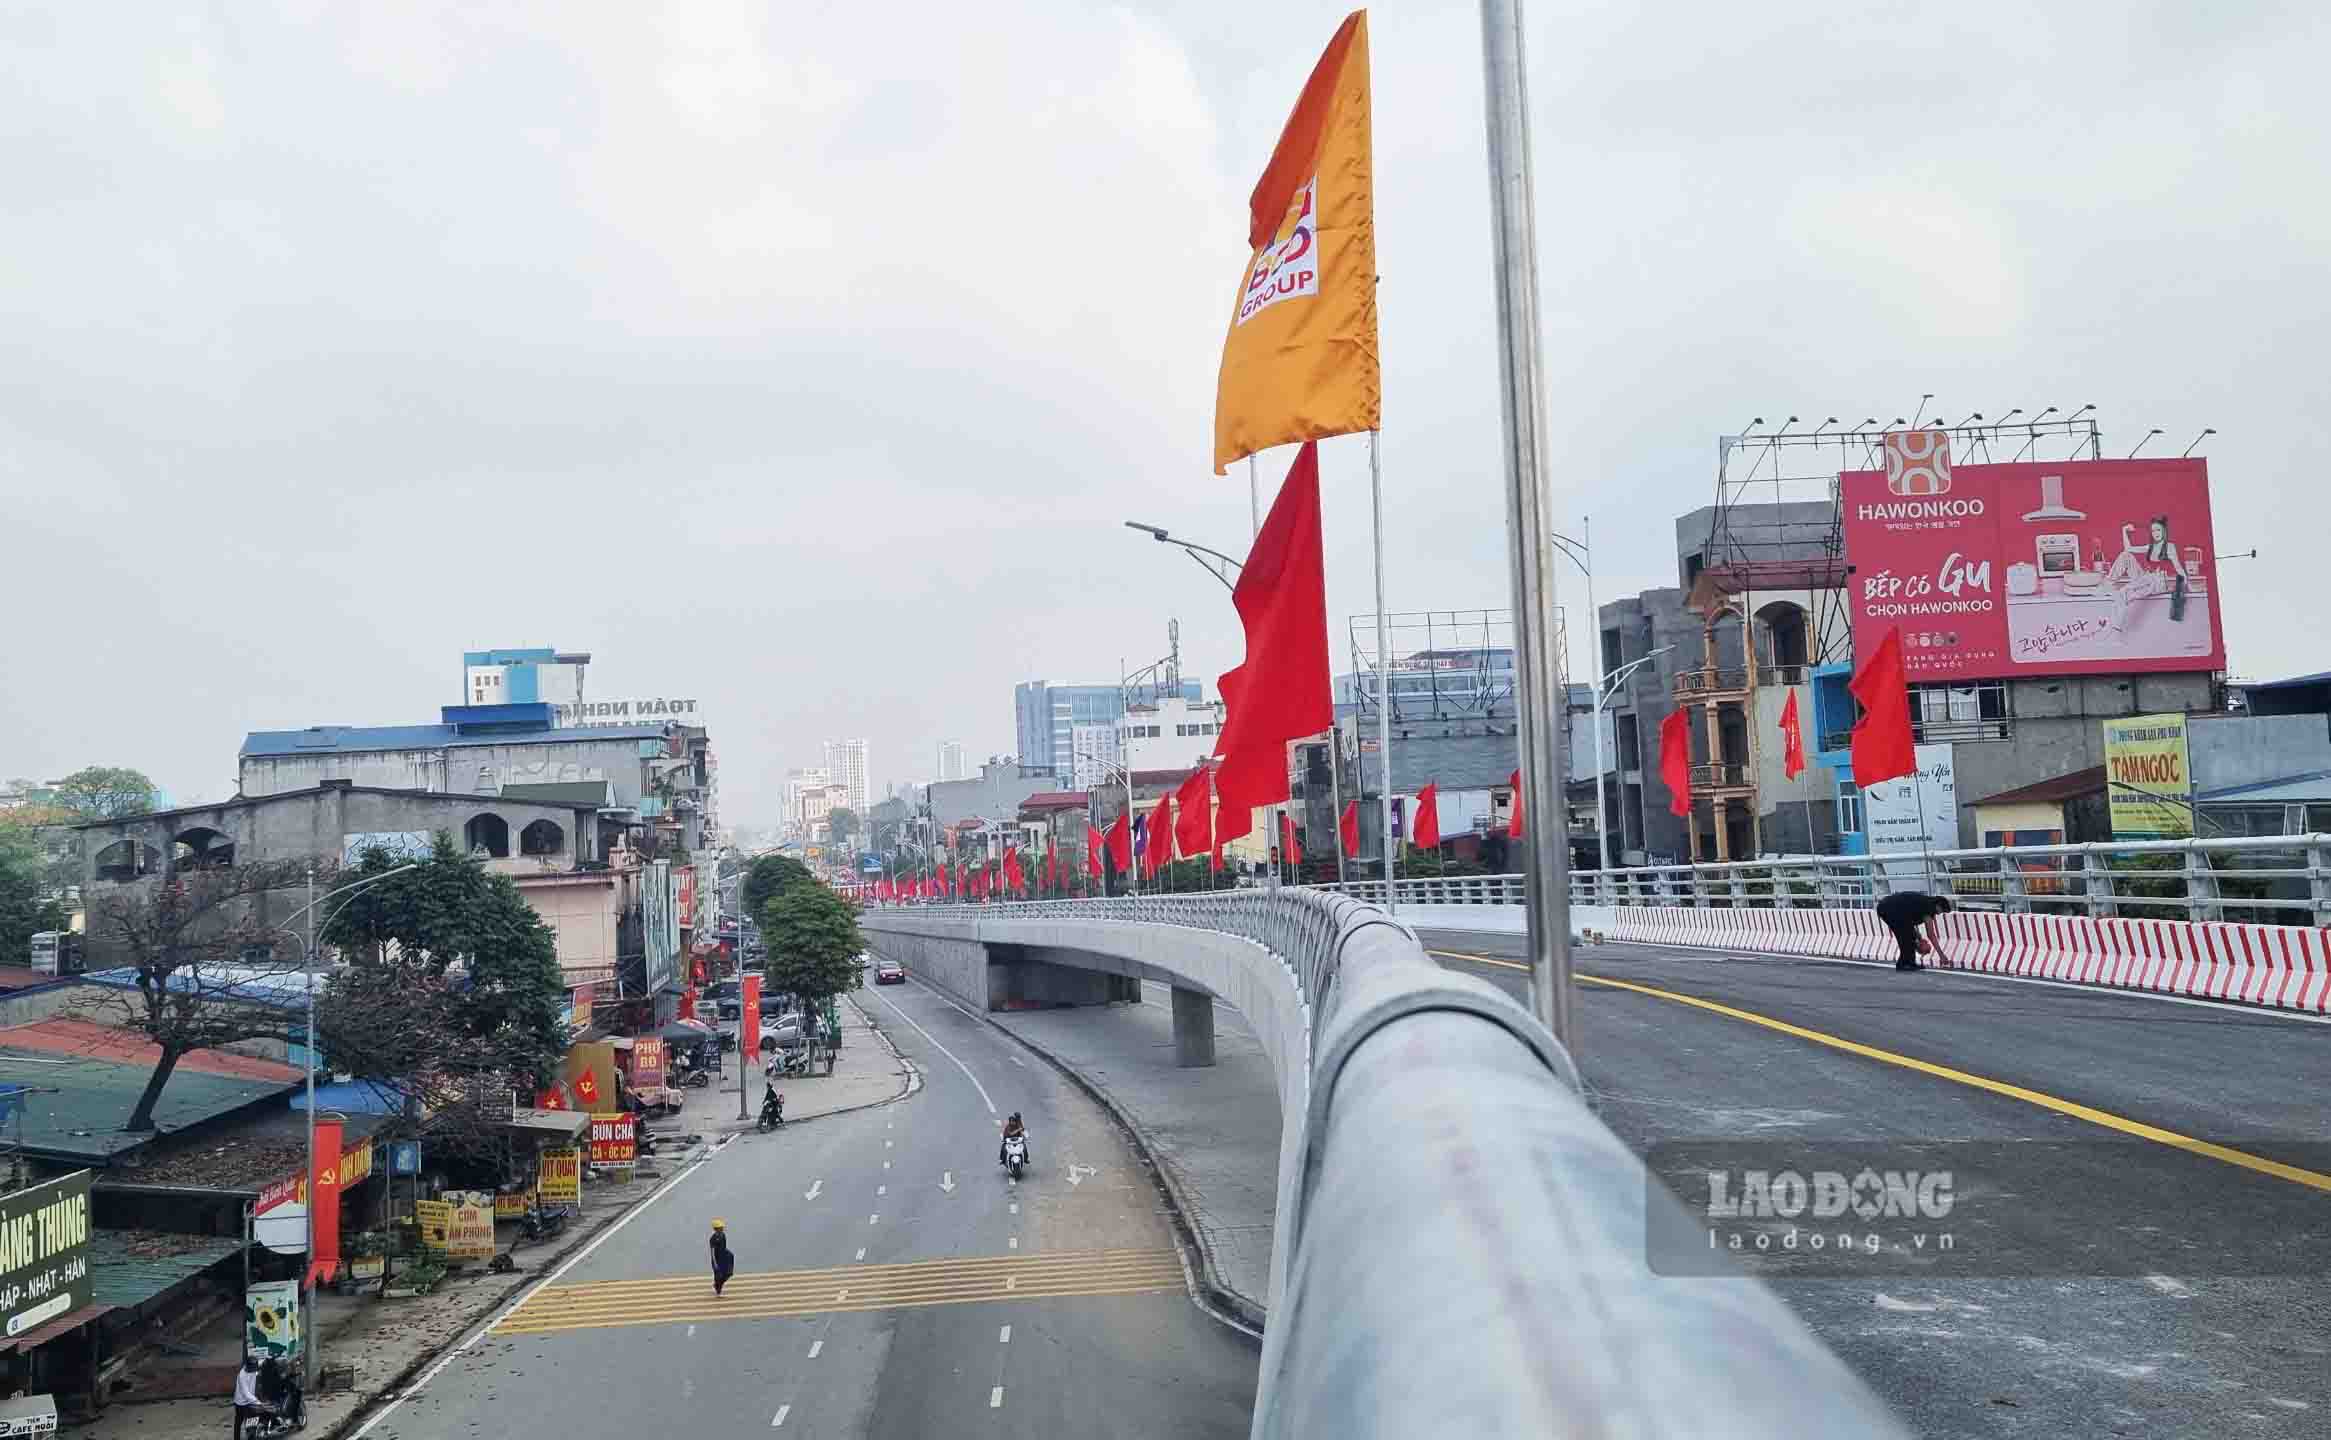 Dự án cầu vượt đường sắt Hà Nội - Thái Nguyên tại nút giao đường Quang Trung, đường Hoàng Văn Thụ với đường Việt Bắc (TP Thái Nguyên) khởi công tháng 7.2023. Đây cũng là cây cầu vượt đường sắt có kết cấu dầm thép đầu tiên được xây dựng tại tỉnh Thái Nguyên. Theo dự kiến, ngày 5.2 công trình sẽ chính thức khánh thành, đưa vào sử dụng.